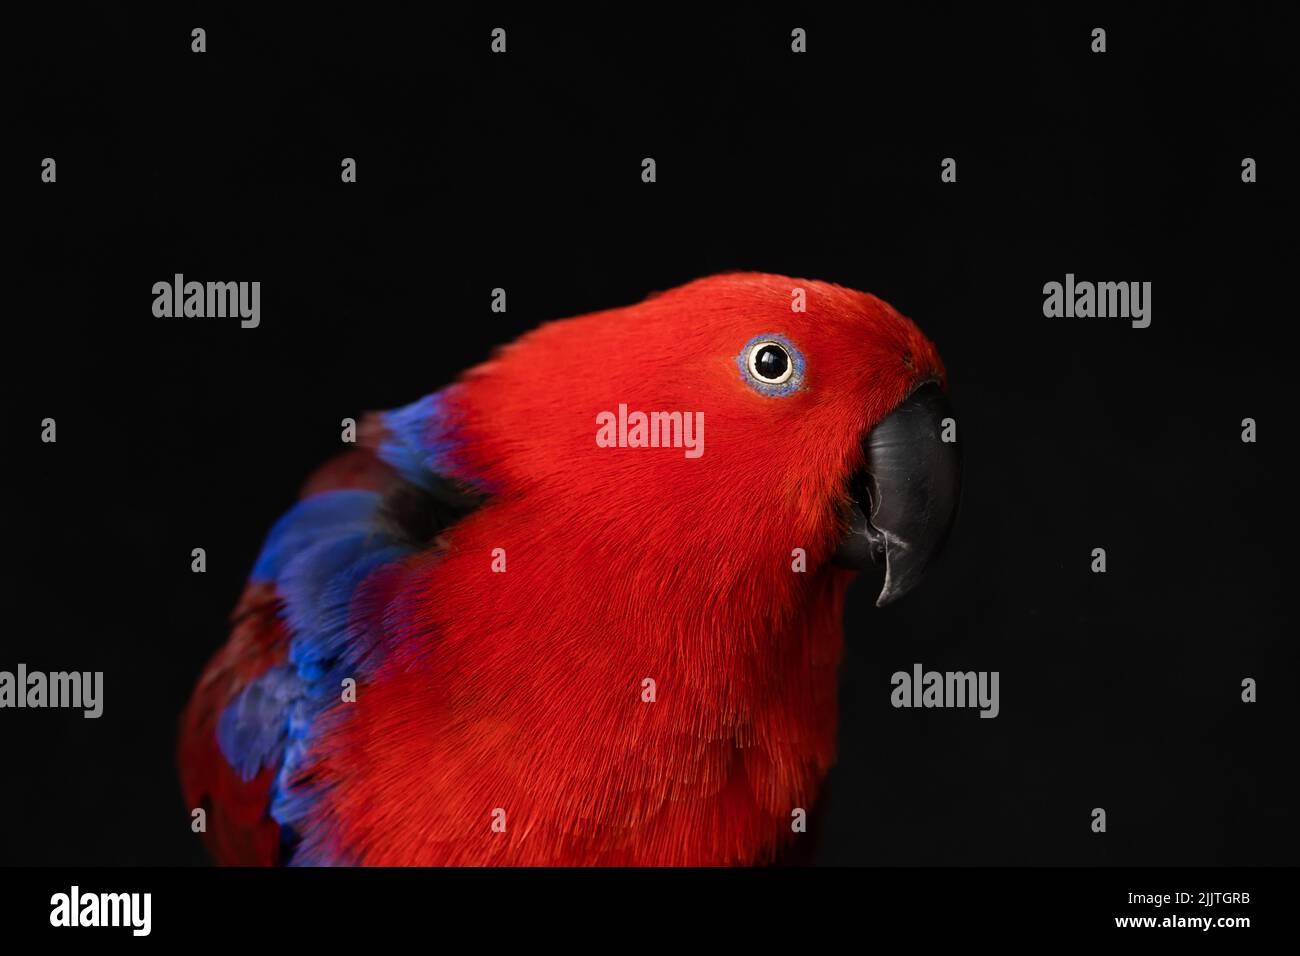 Profondità di campo poco profonda foto di una femmina prigioniero rosso e blu eclectus pappagallo (Eclectus roratus) guardando la fotocamera con uno sfondo nero Foto Stock